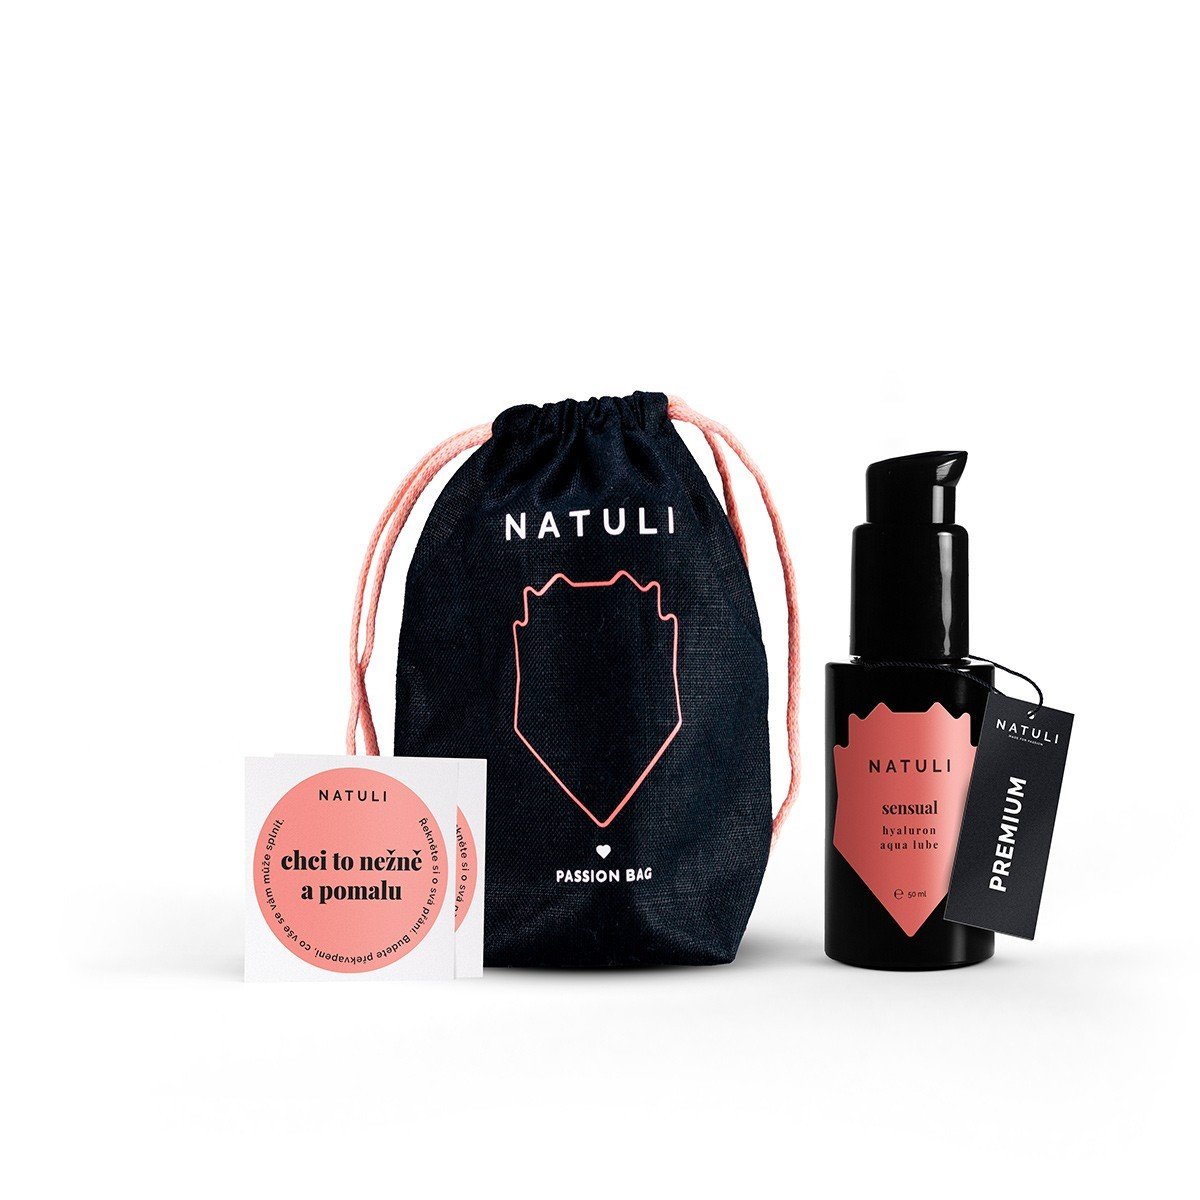 Natuli Premium Sensual Gift 50 ml, lubrikant na vodnej báze pre ženy v darčekovom balení